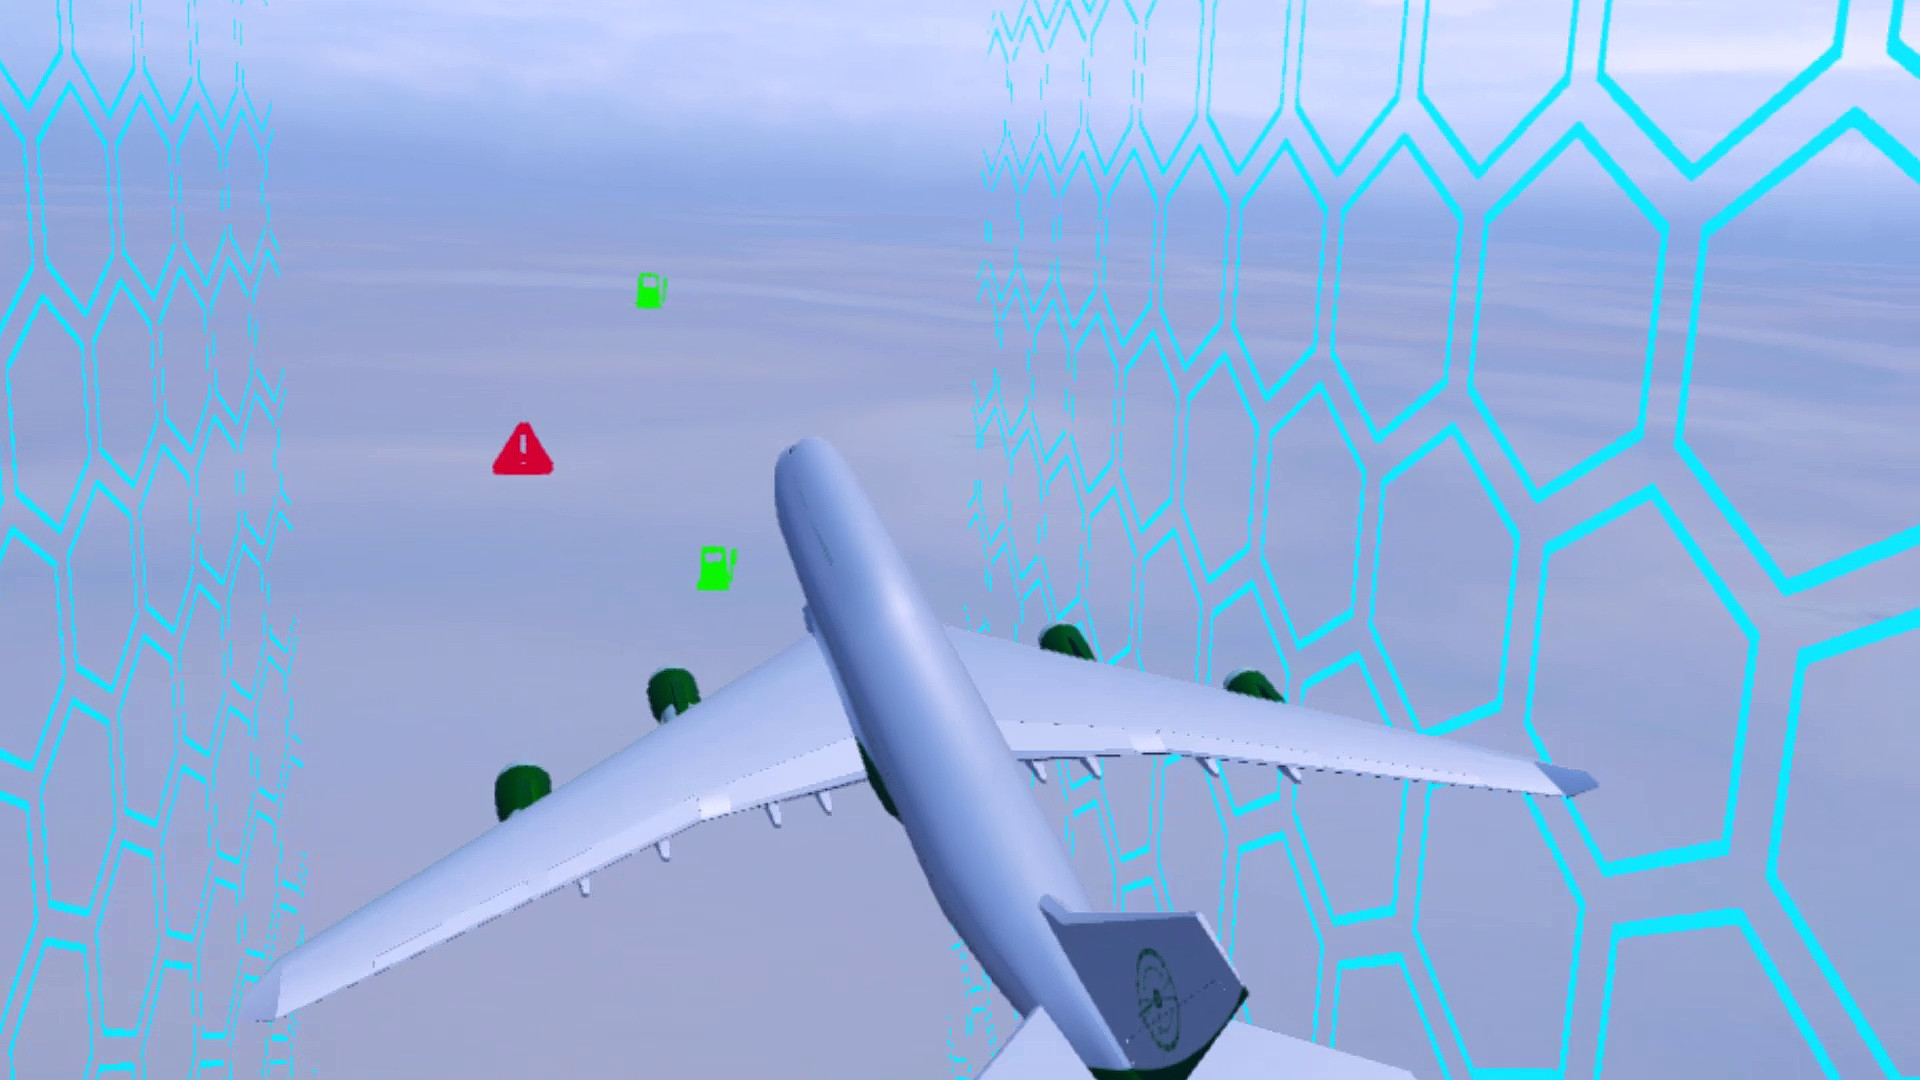 Pilot Rudder VR screenshot